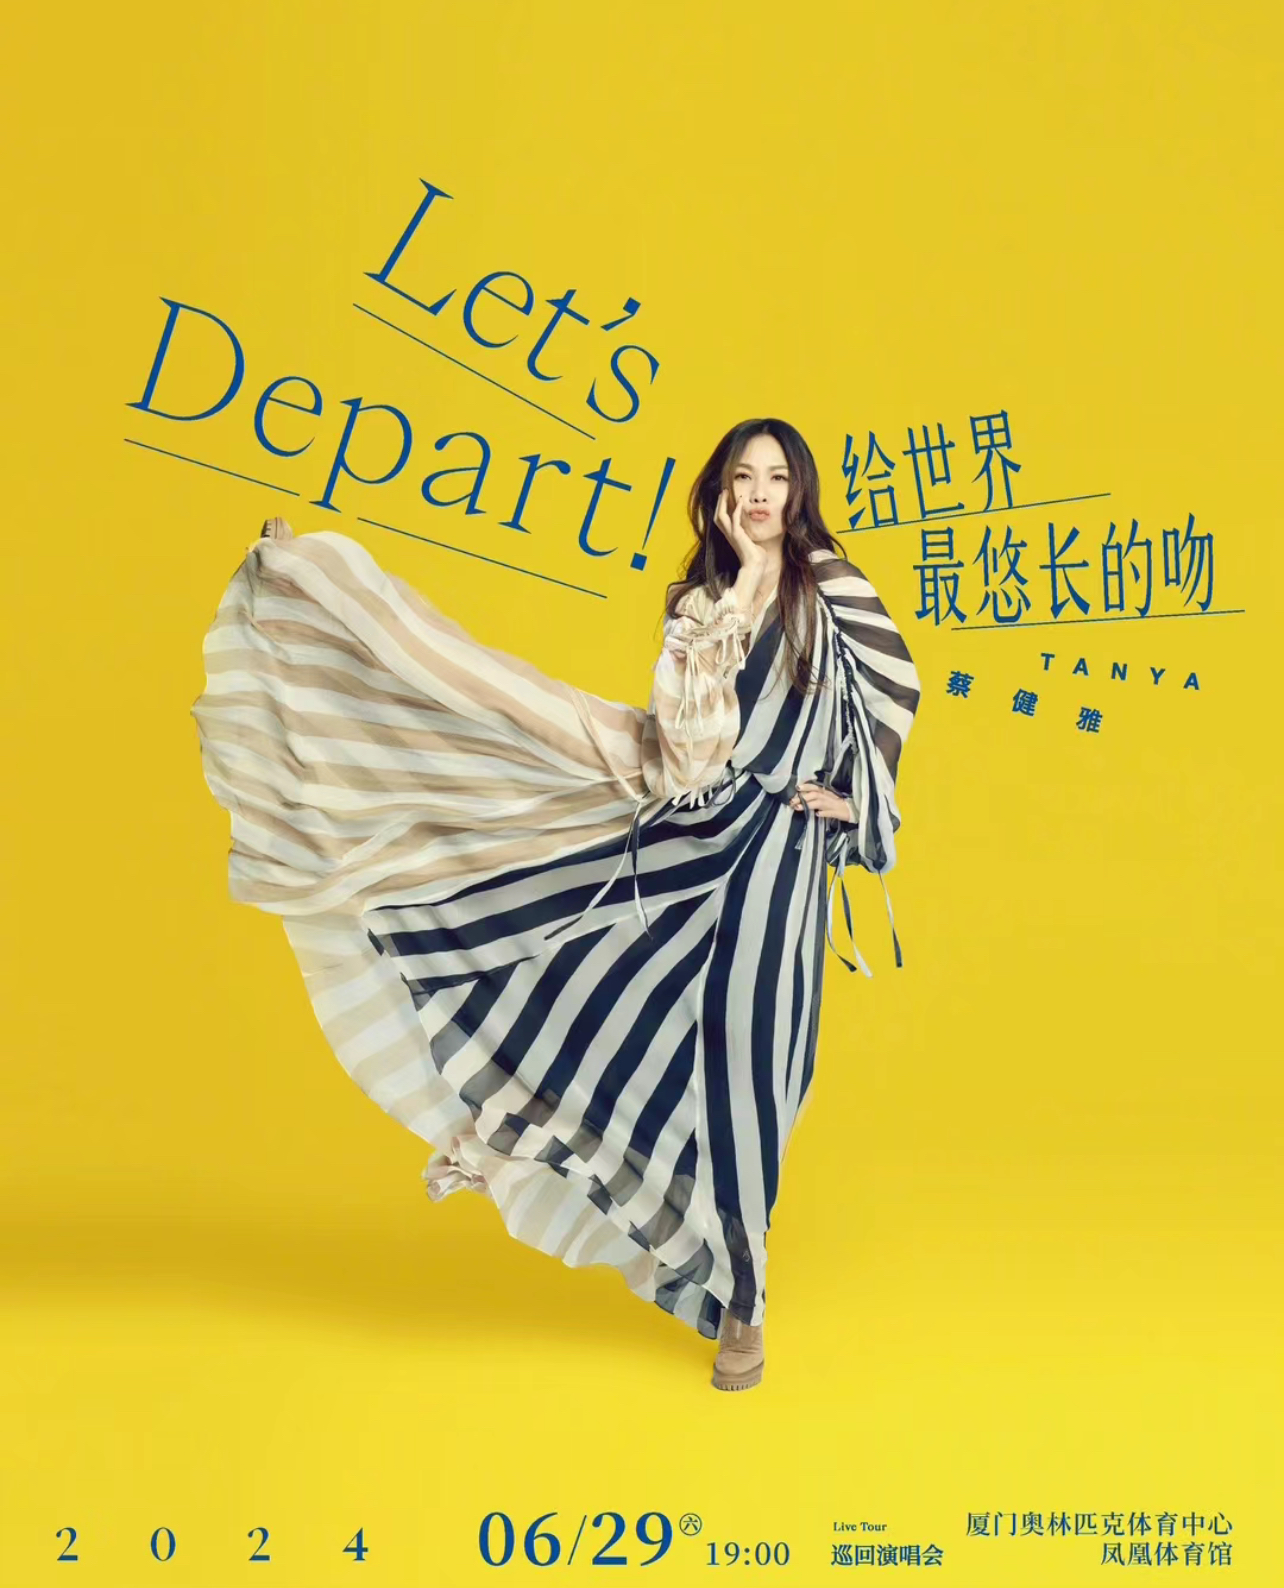 [厦门]蔡健雅“Let’s Depart！ 给世界最悠长的吻”巡回演唱会-厦门站